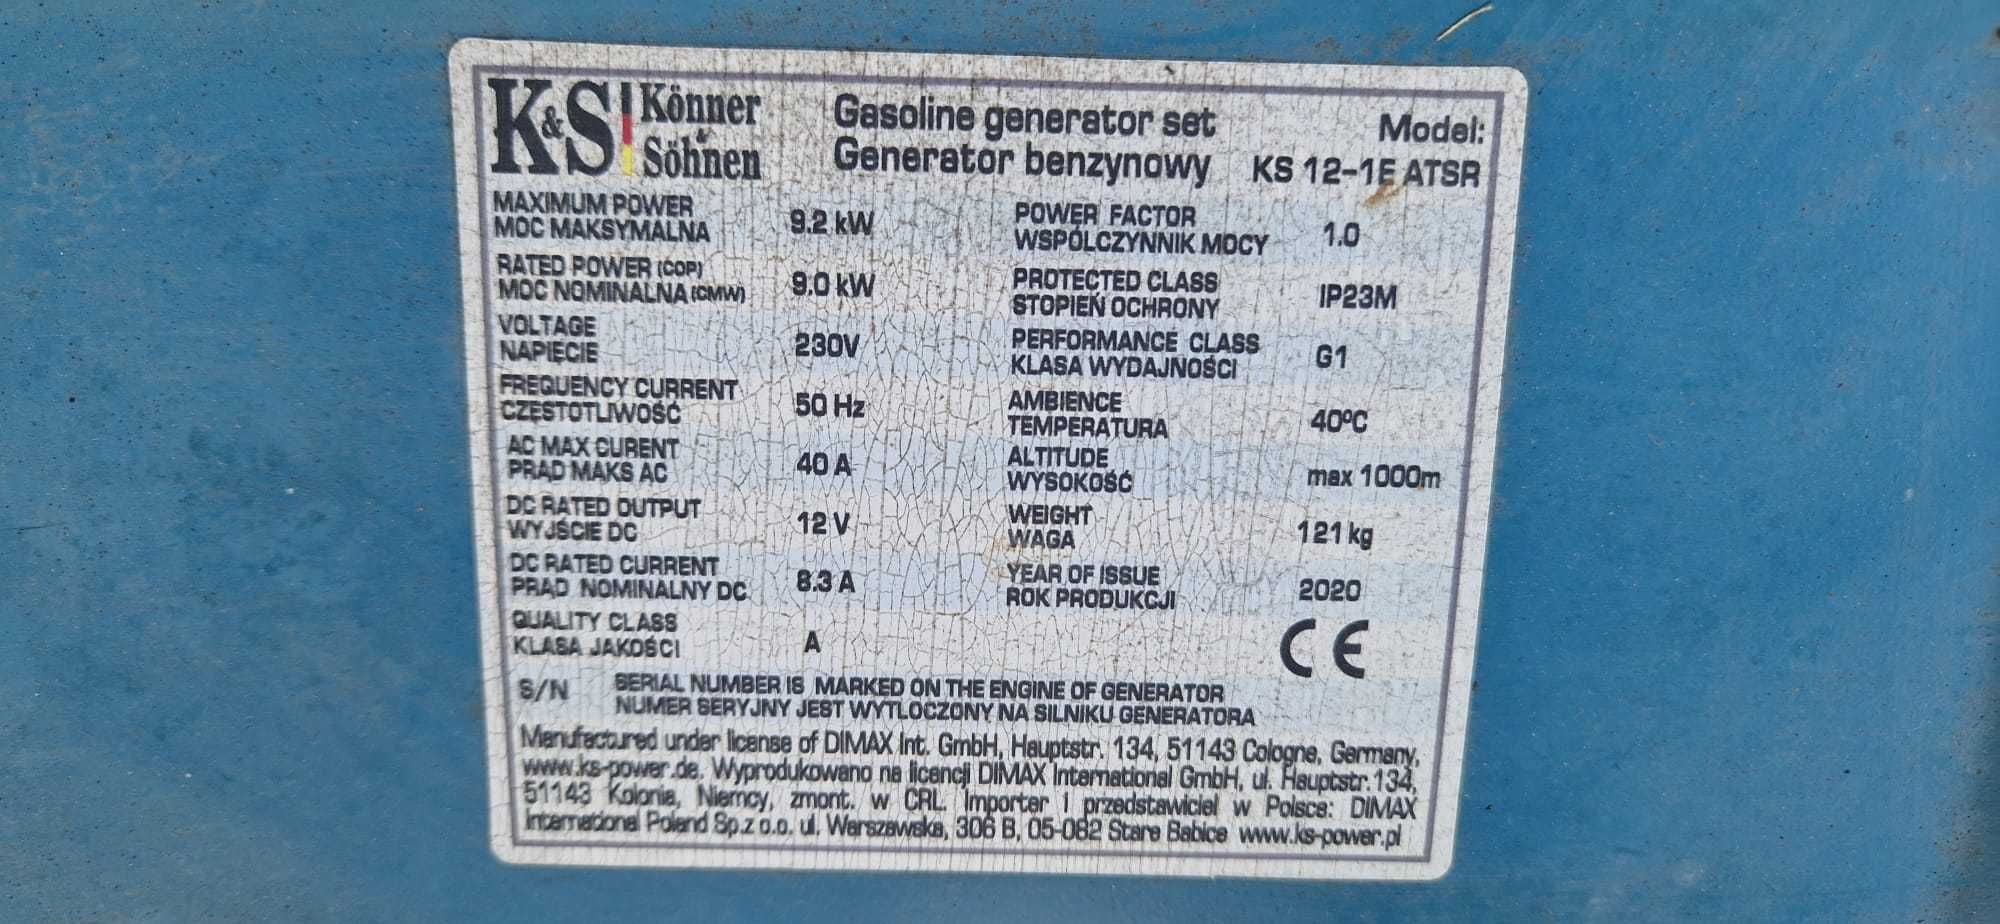 De inchiriat generator curent 9.2 kw mono/trifazic inchiriez generator